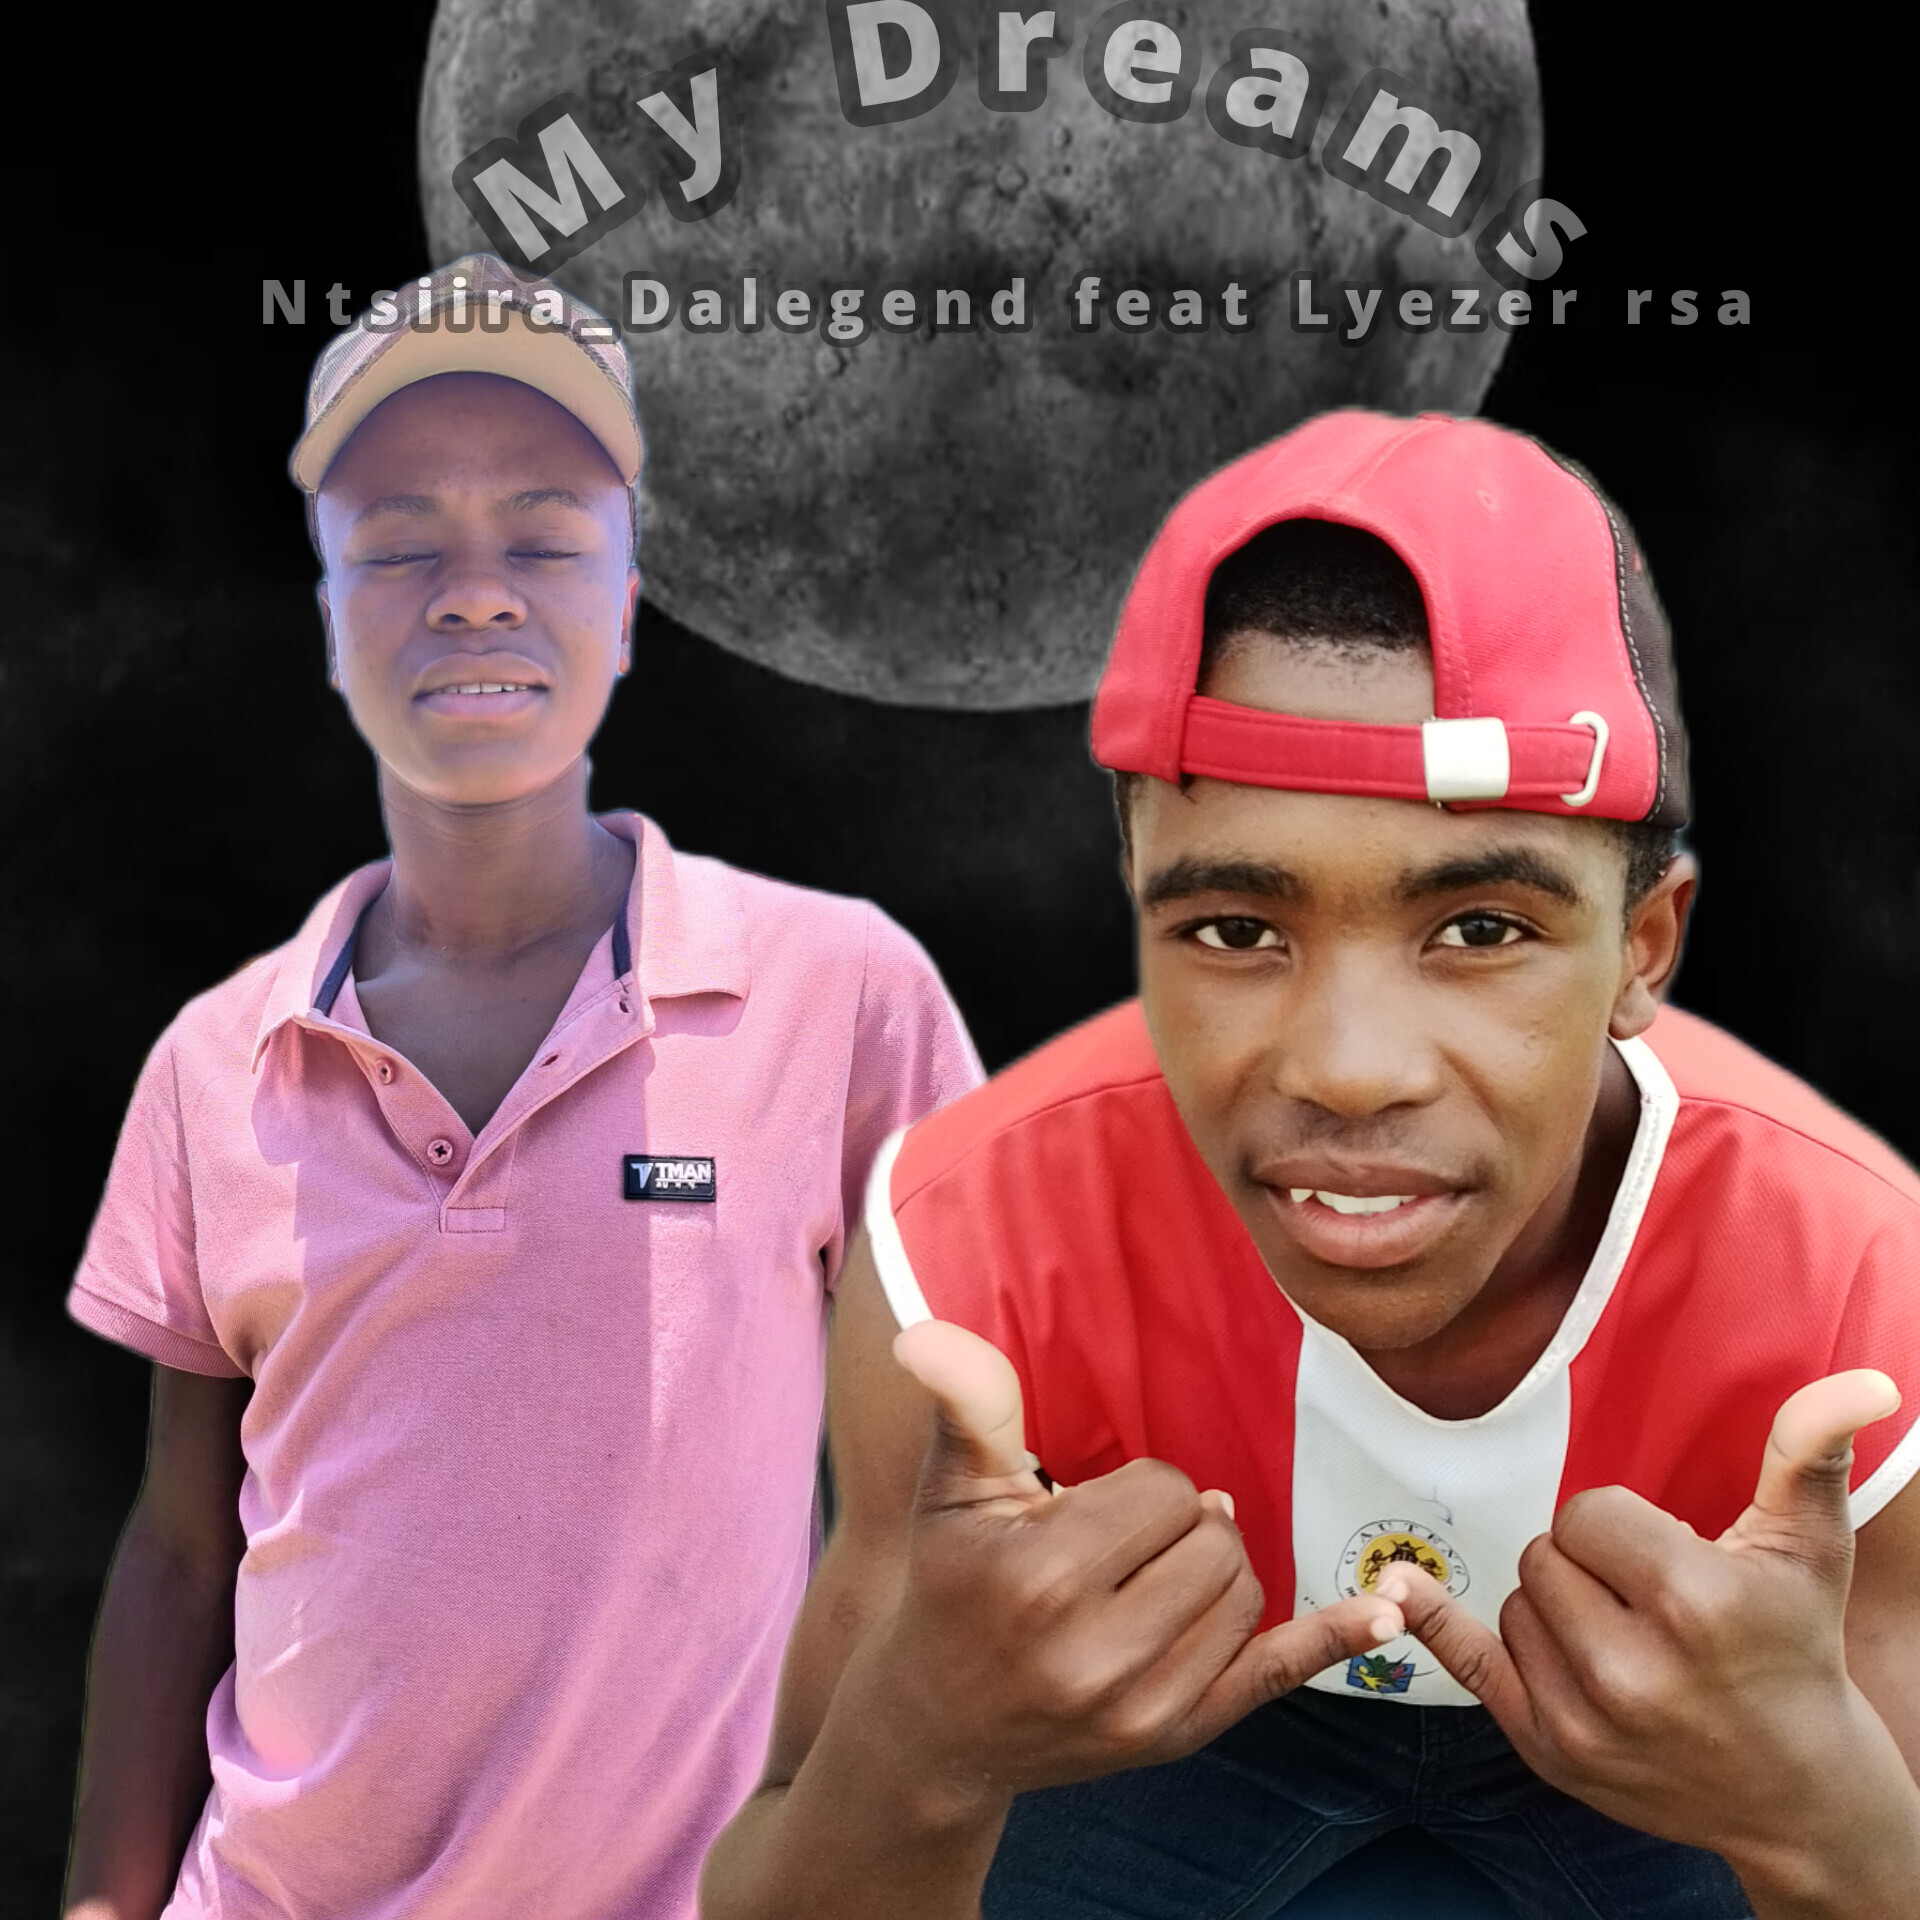 My dreams - Ntsiira Dalegend feat Lyezer rsa